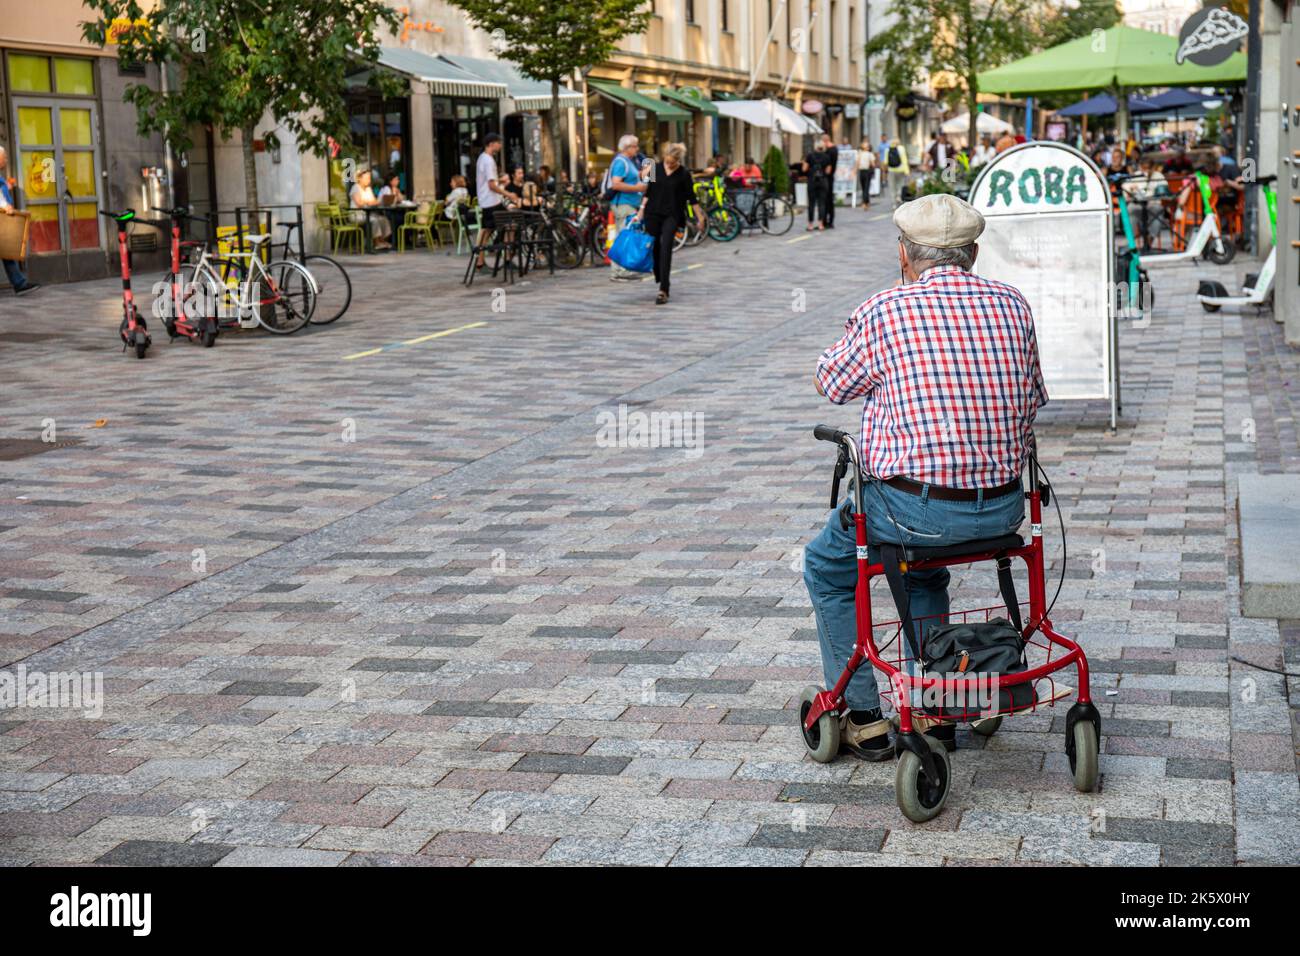 Homme âgé assis sur un roller ou une aide à la marche dans la zone piétonne ISO Roobertinkatu, district de Punavuori à Helsinki, Finlande Banque D'Images